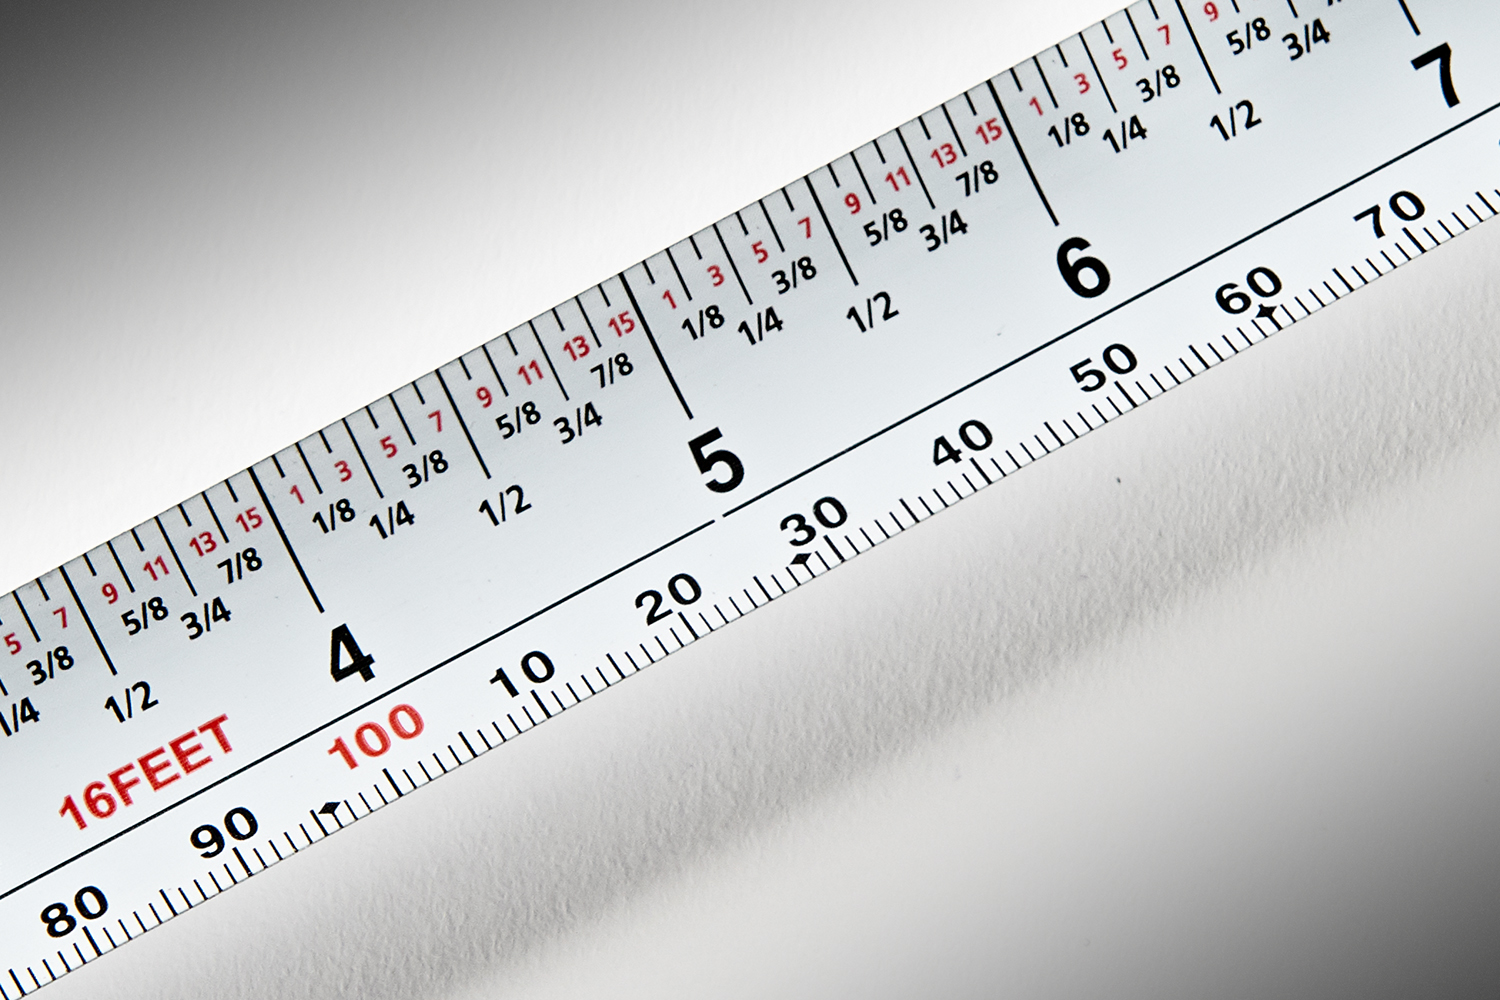 FastCap ProCarpenter Tape Measure, Metric-Standard 16